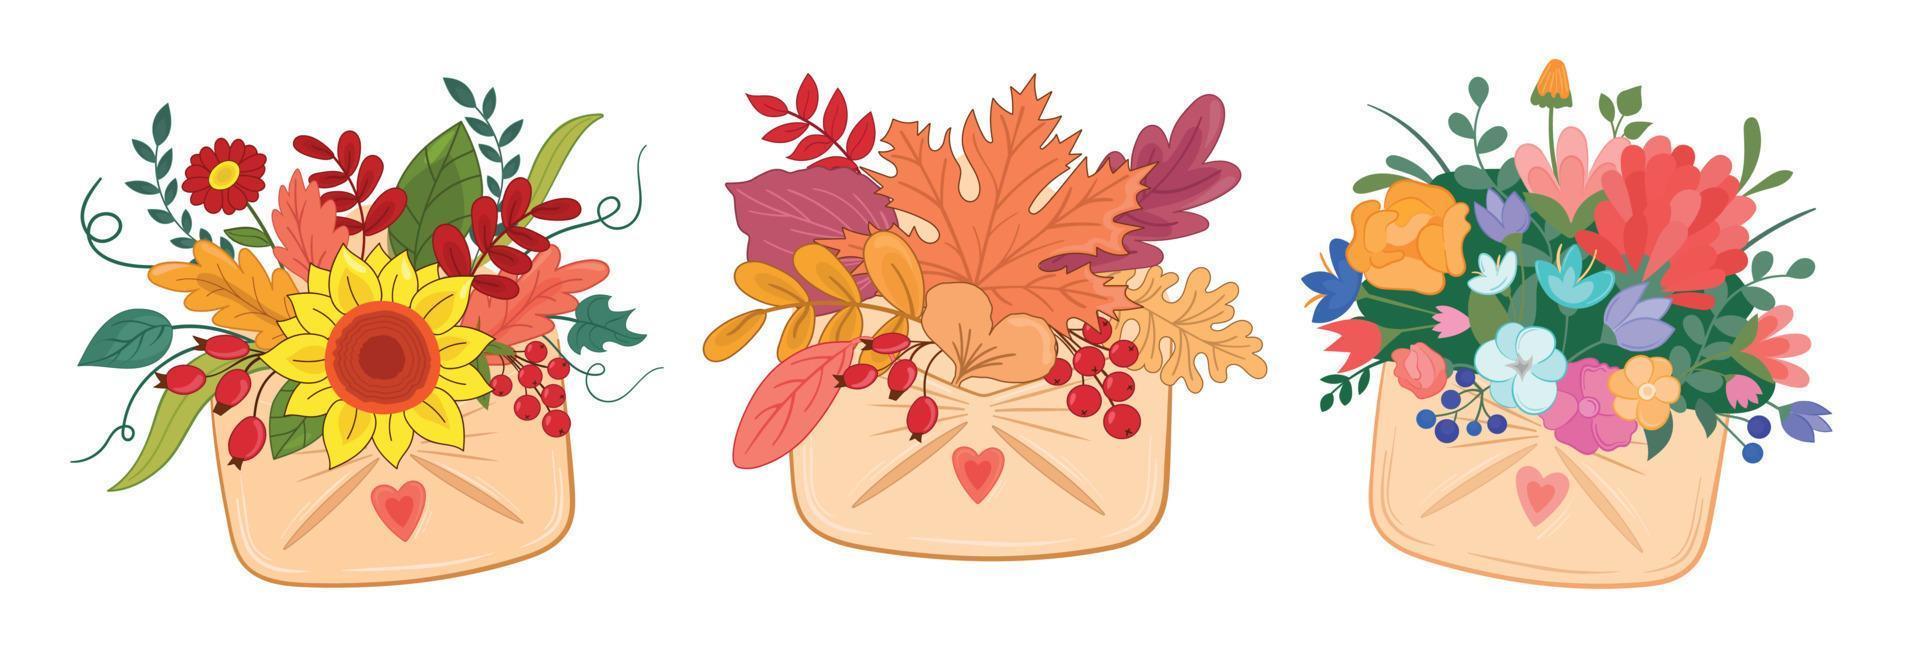 ilustração vetorial definir folhas de outono, flores em papel carta e envelope em fundo branco isolado vetor